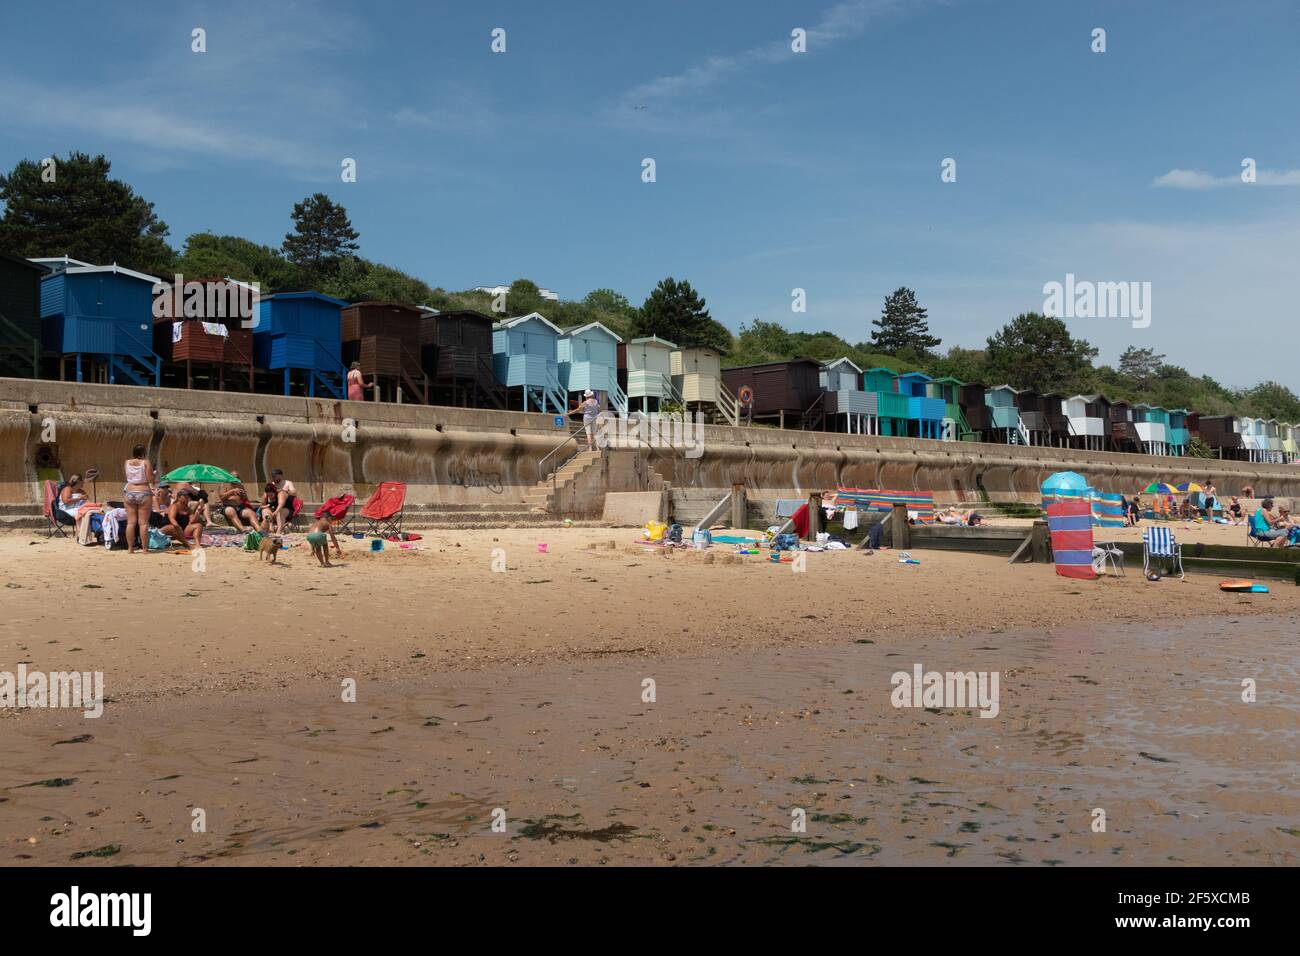 Cabañas de playa con vistas al mar en Frinton-on-sea, una pequeña ciudad costera inglesa de la costa este Foto de stock